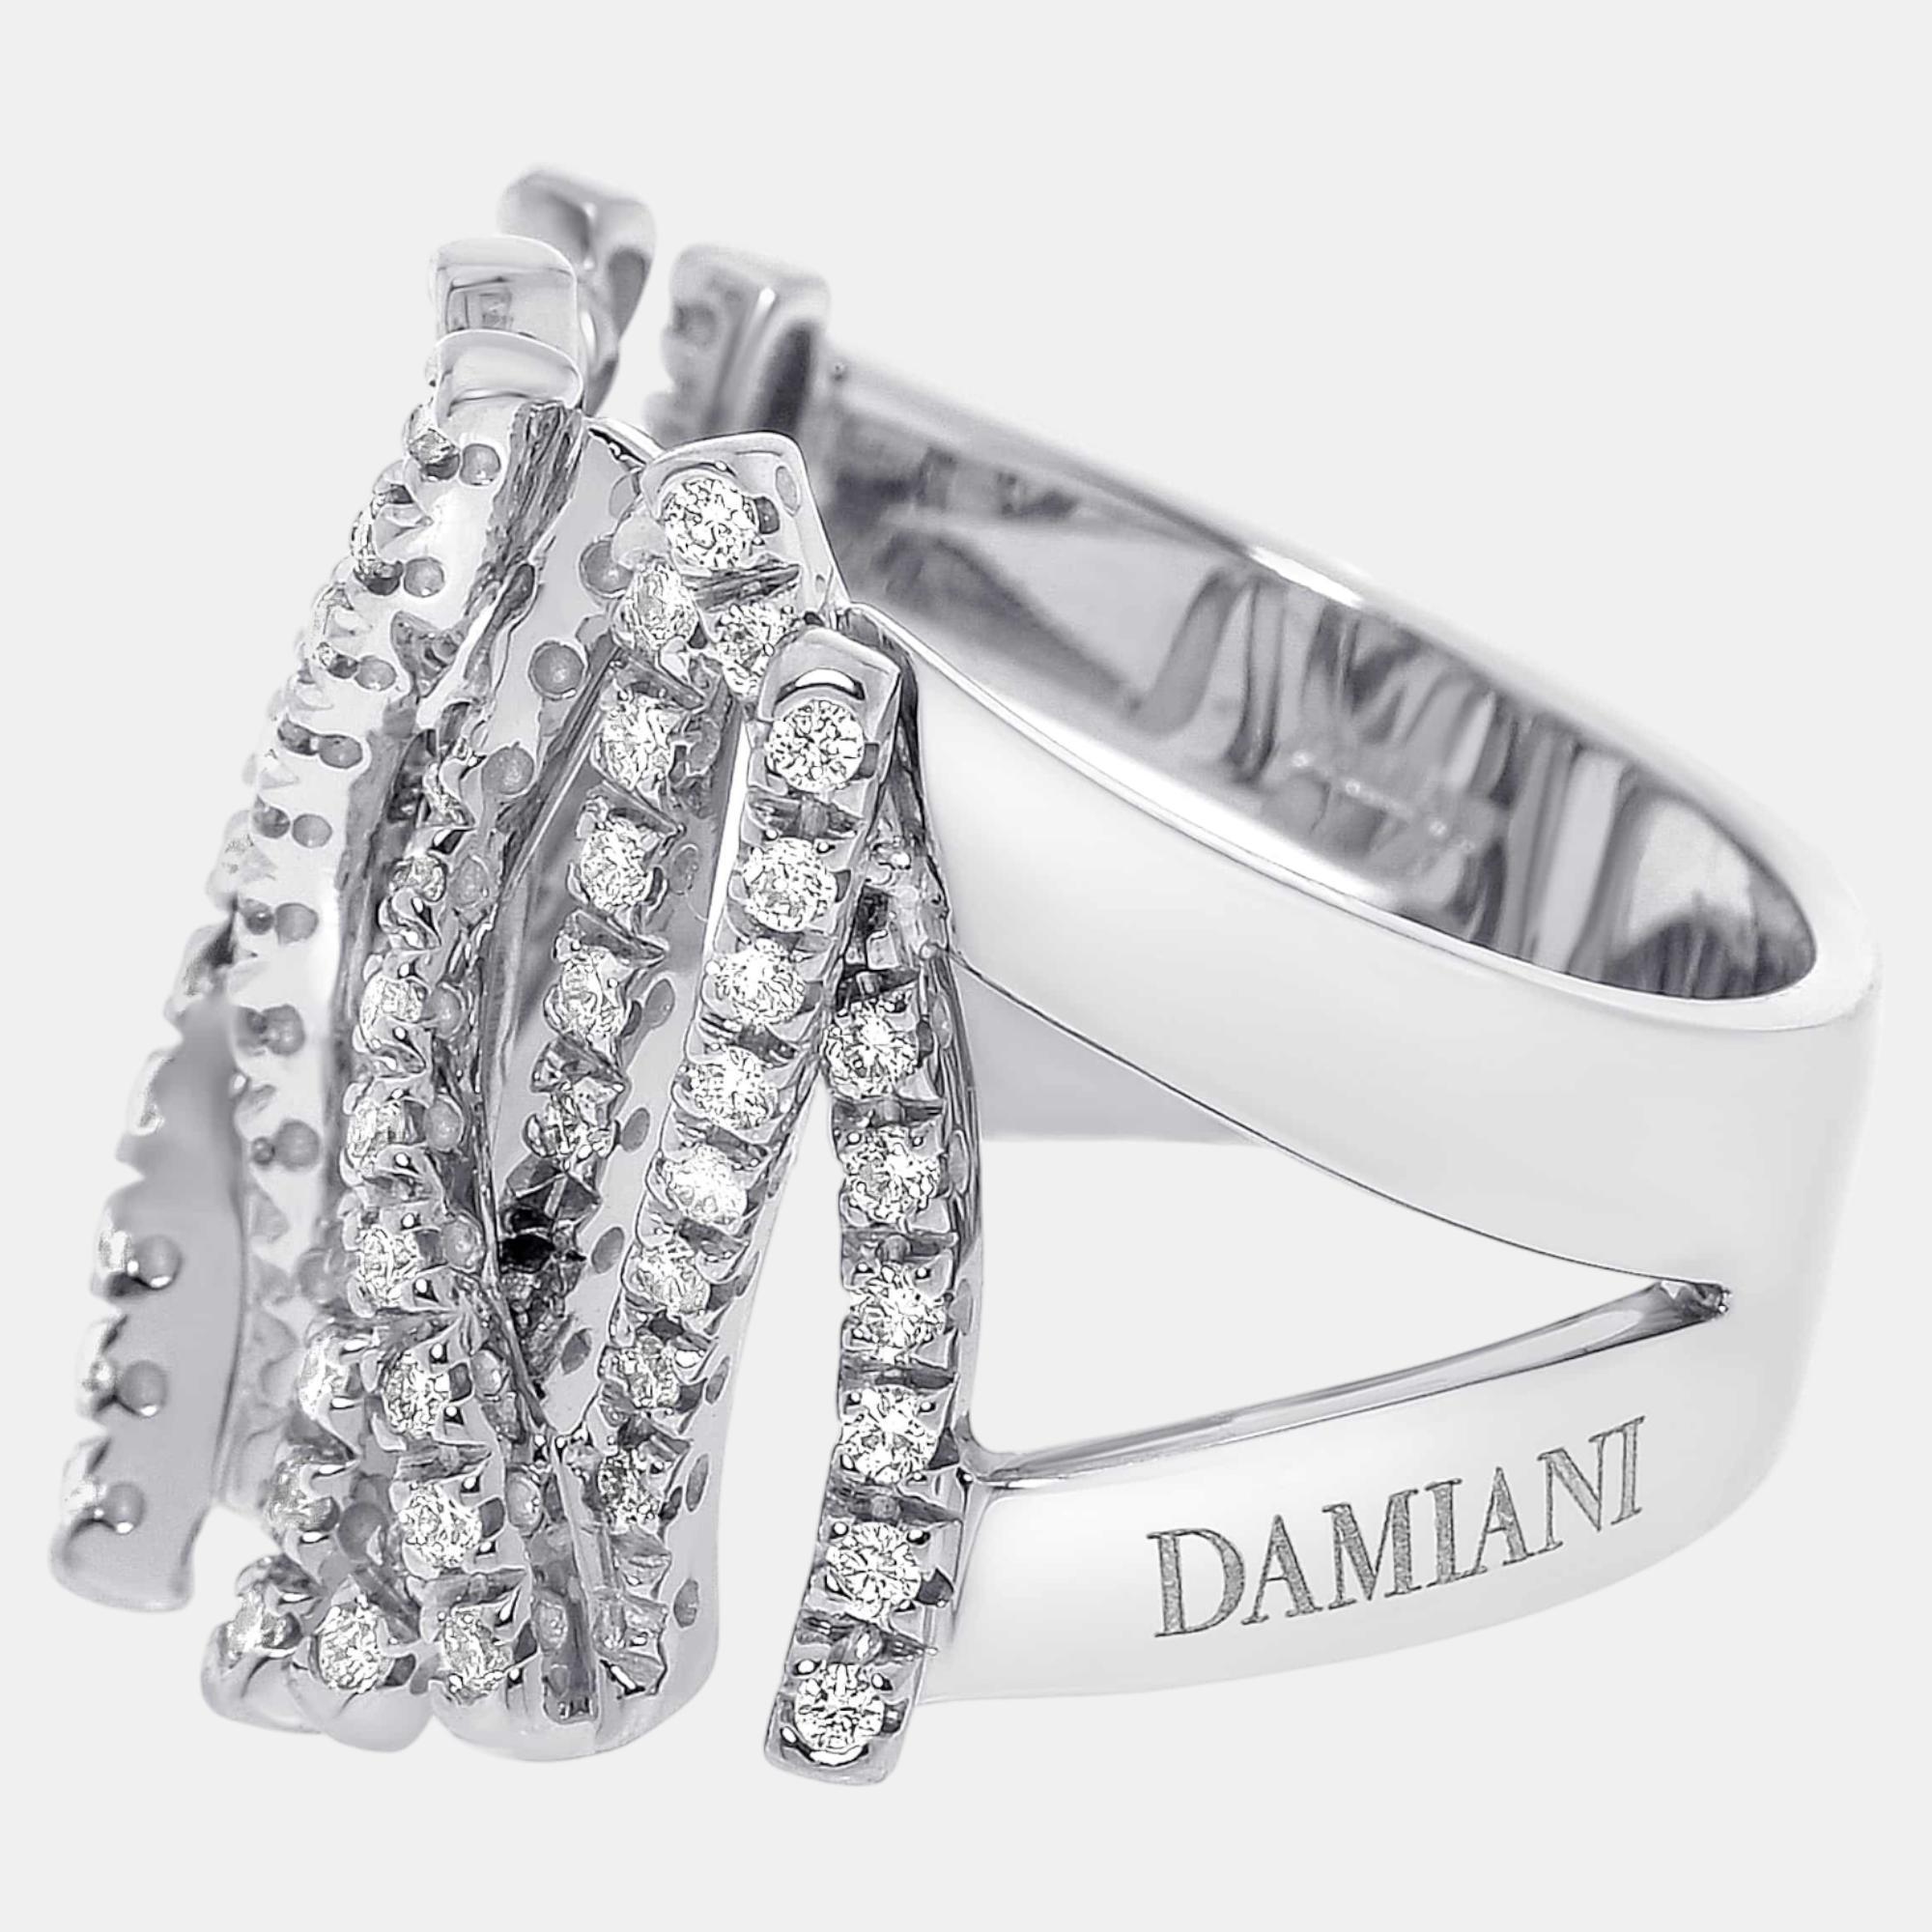 

Damiani 18K White Gold, Diamond 0.84ct. tw. Statement Ring Sz. 7.25